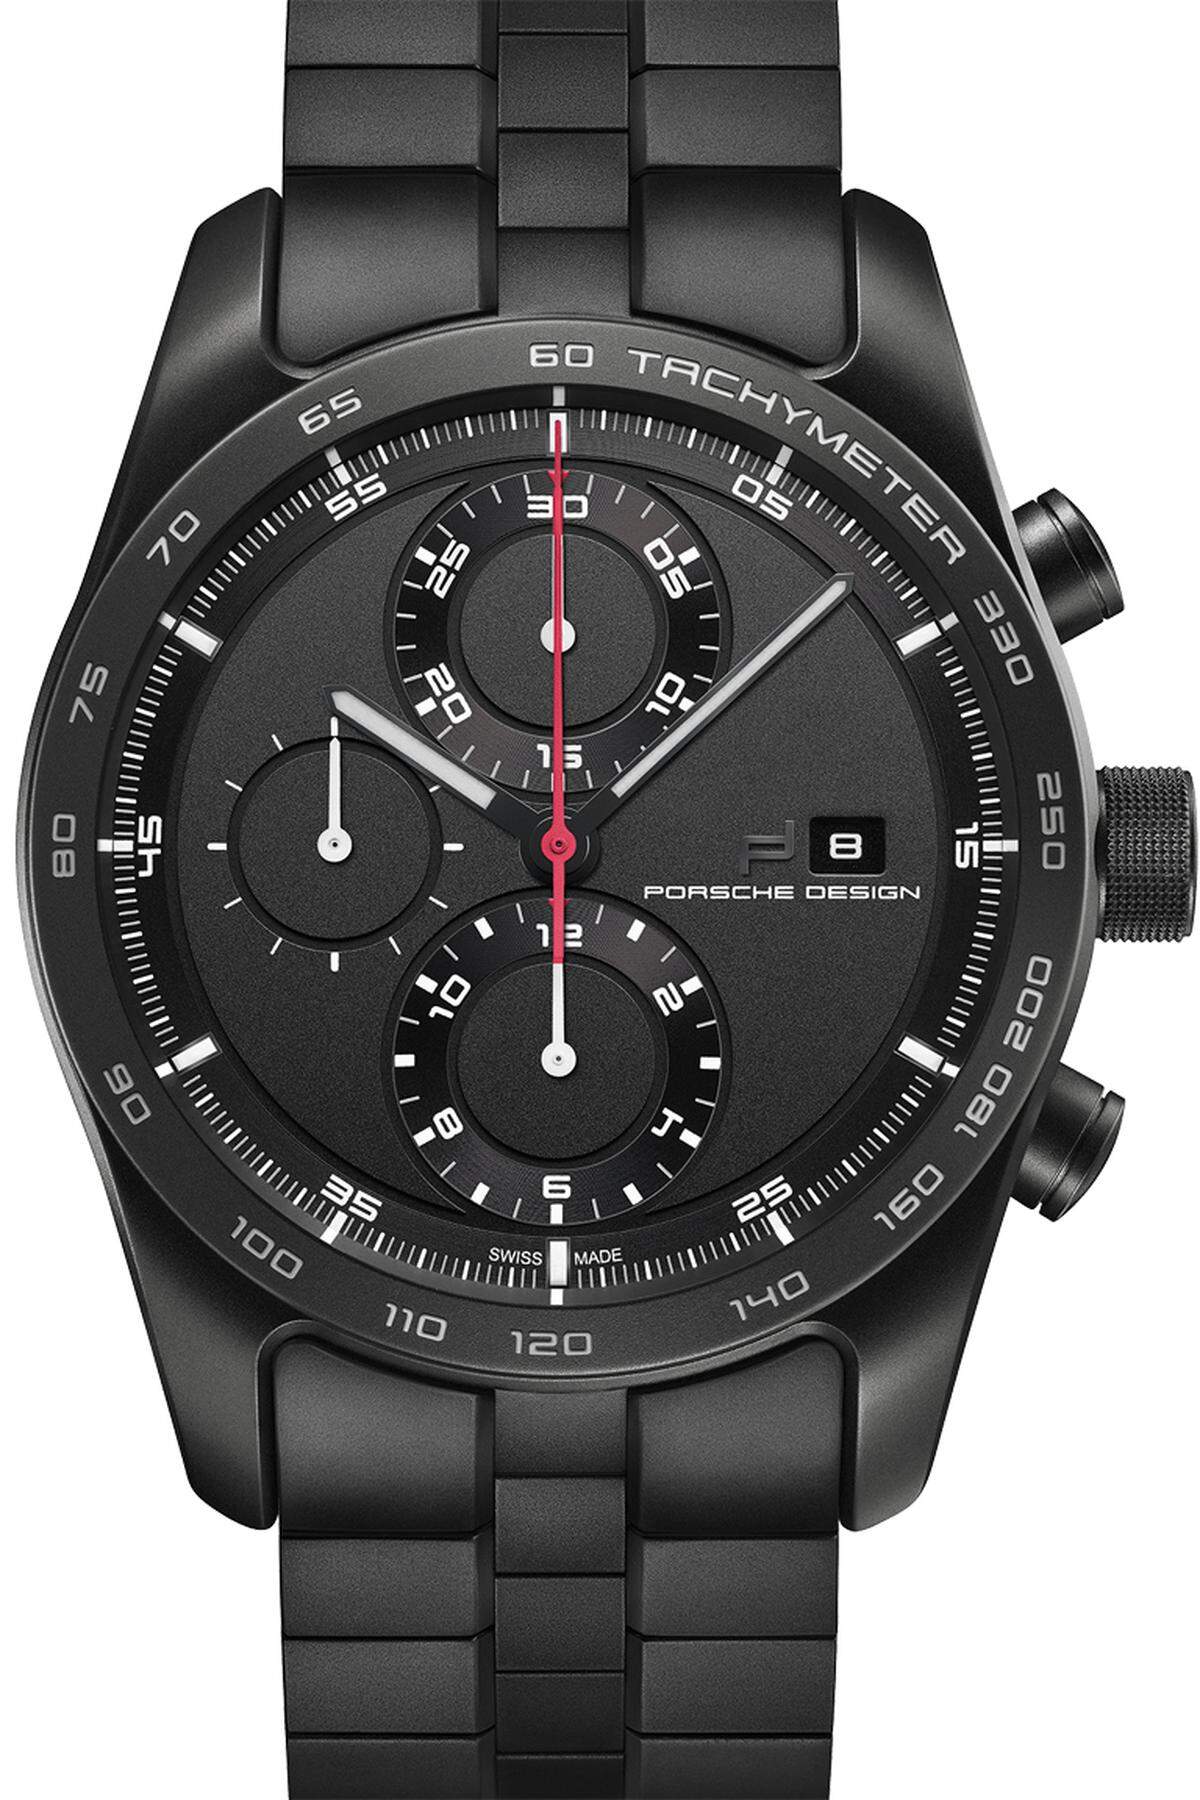 Neuerdings orien-tiert sich die Marke, die die erste schwarze Uhr auf den Markt gebracht hat, im Design wieder ganz stark an ihren Wurzeln.